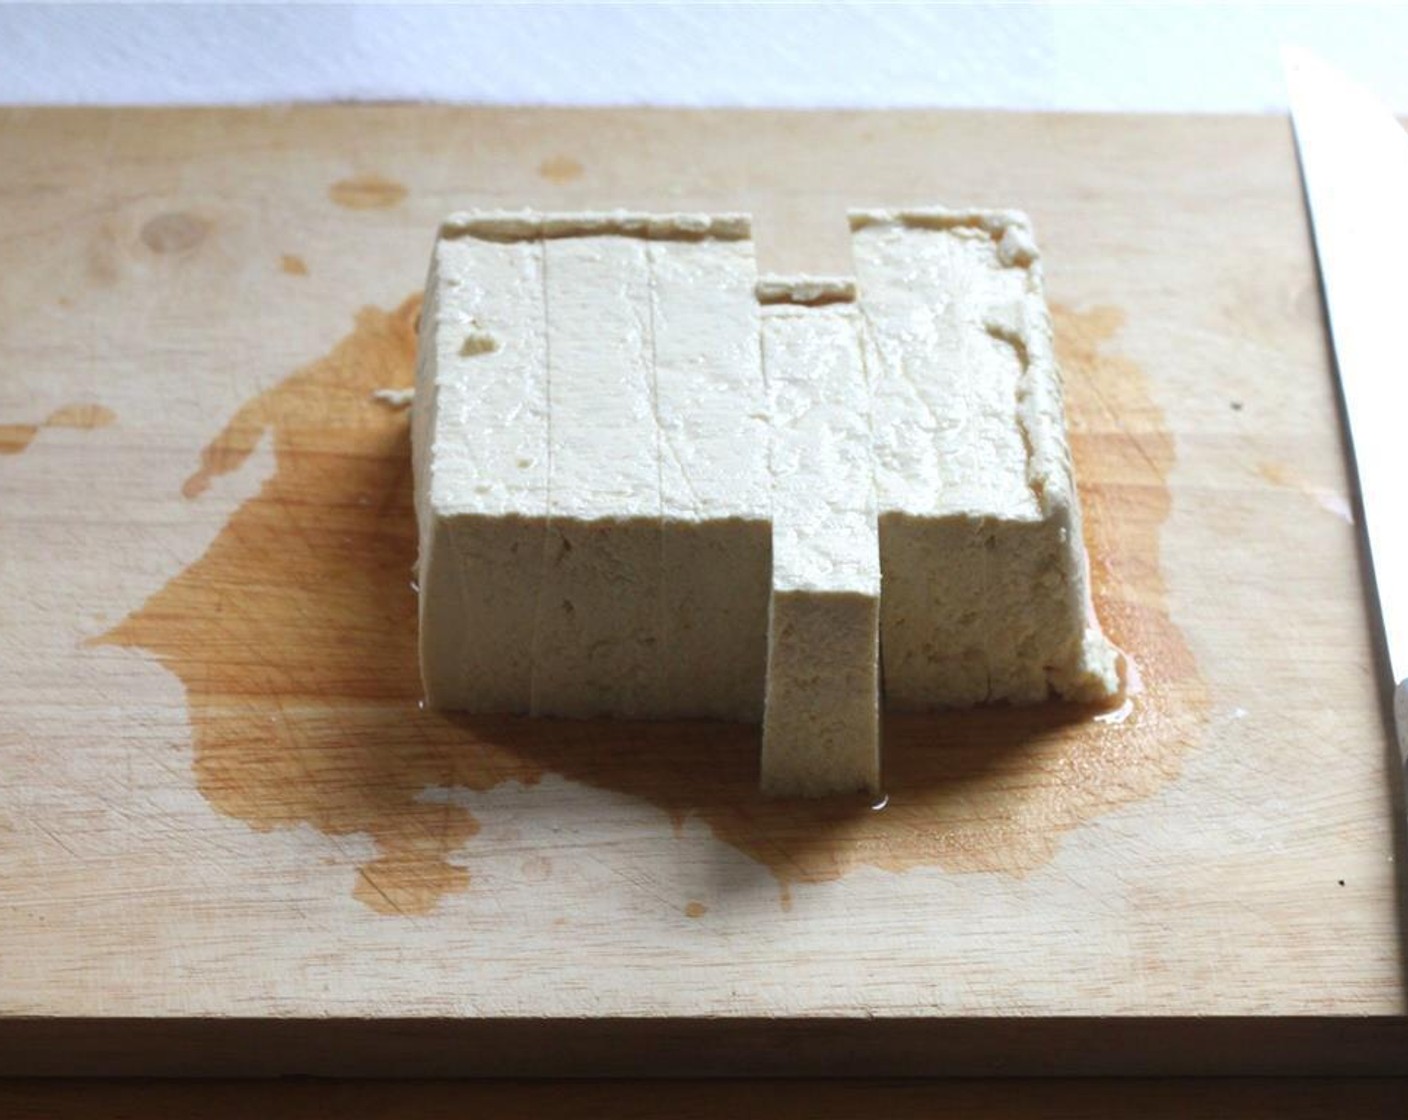 Schritt 1 Tofu (1 Pck.) in 6 Scheiben schneiden und etwa 10 Minuten auf Küchenpapier abtropfen lassen.